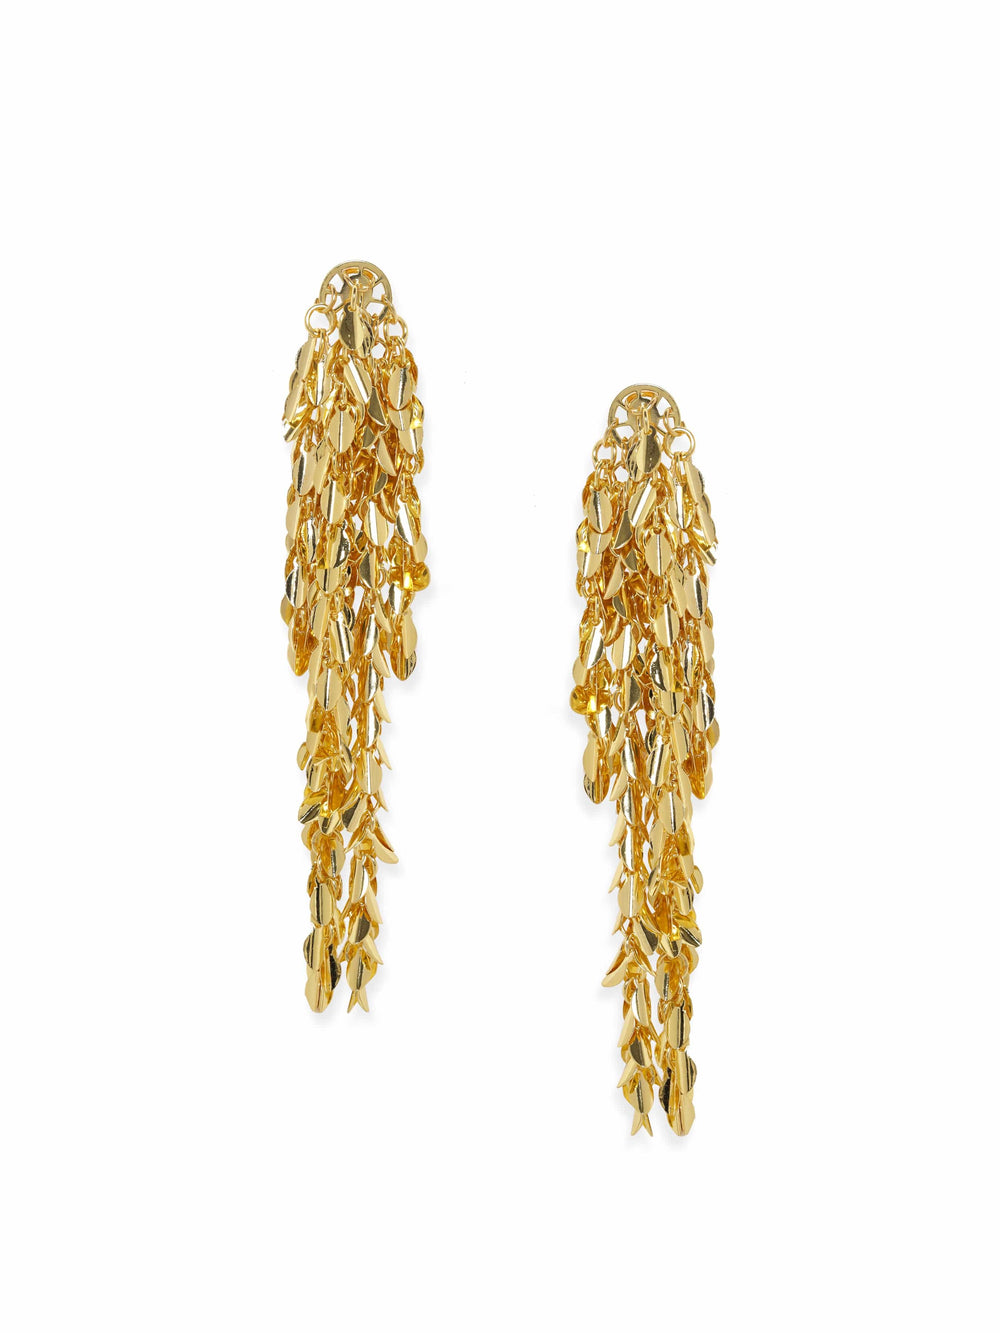 Rubans Voguish Golden Cascade Shoulder Duster Earrings Earrings